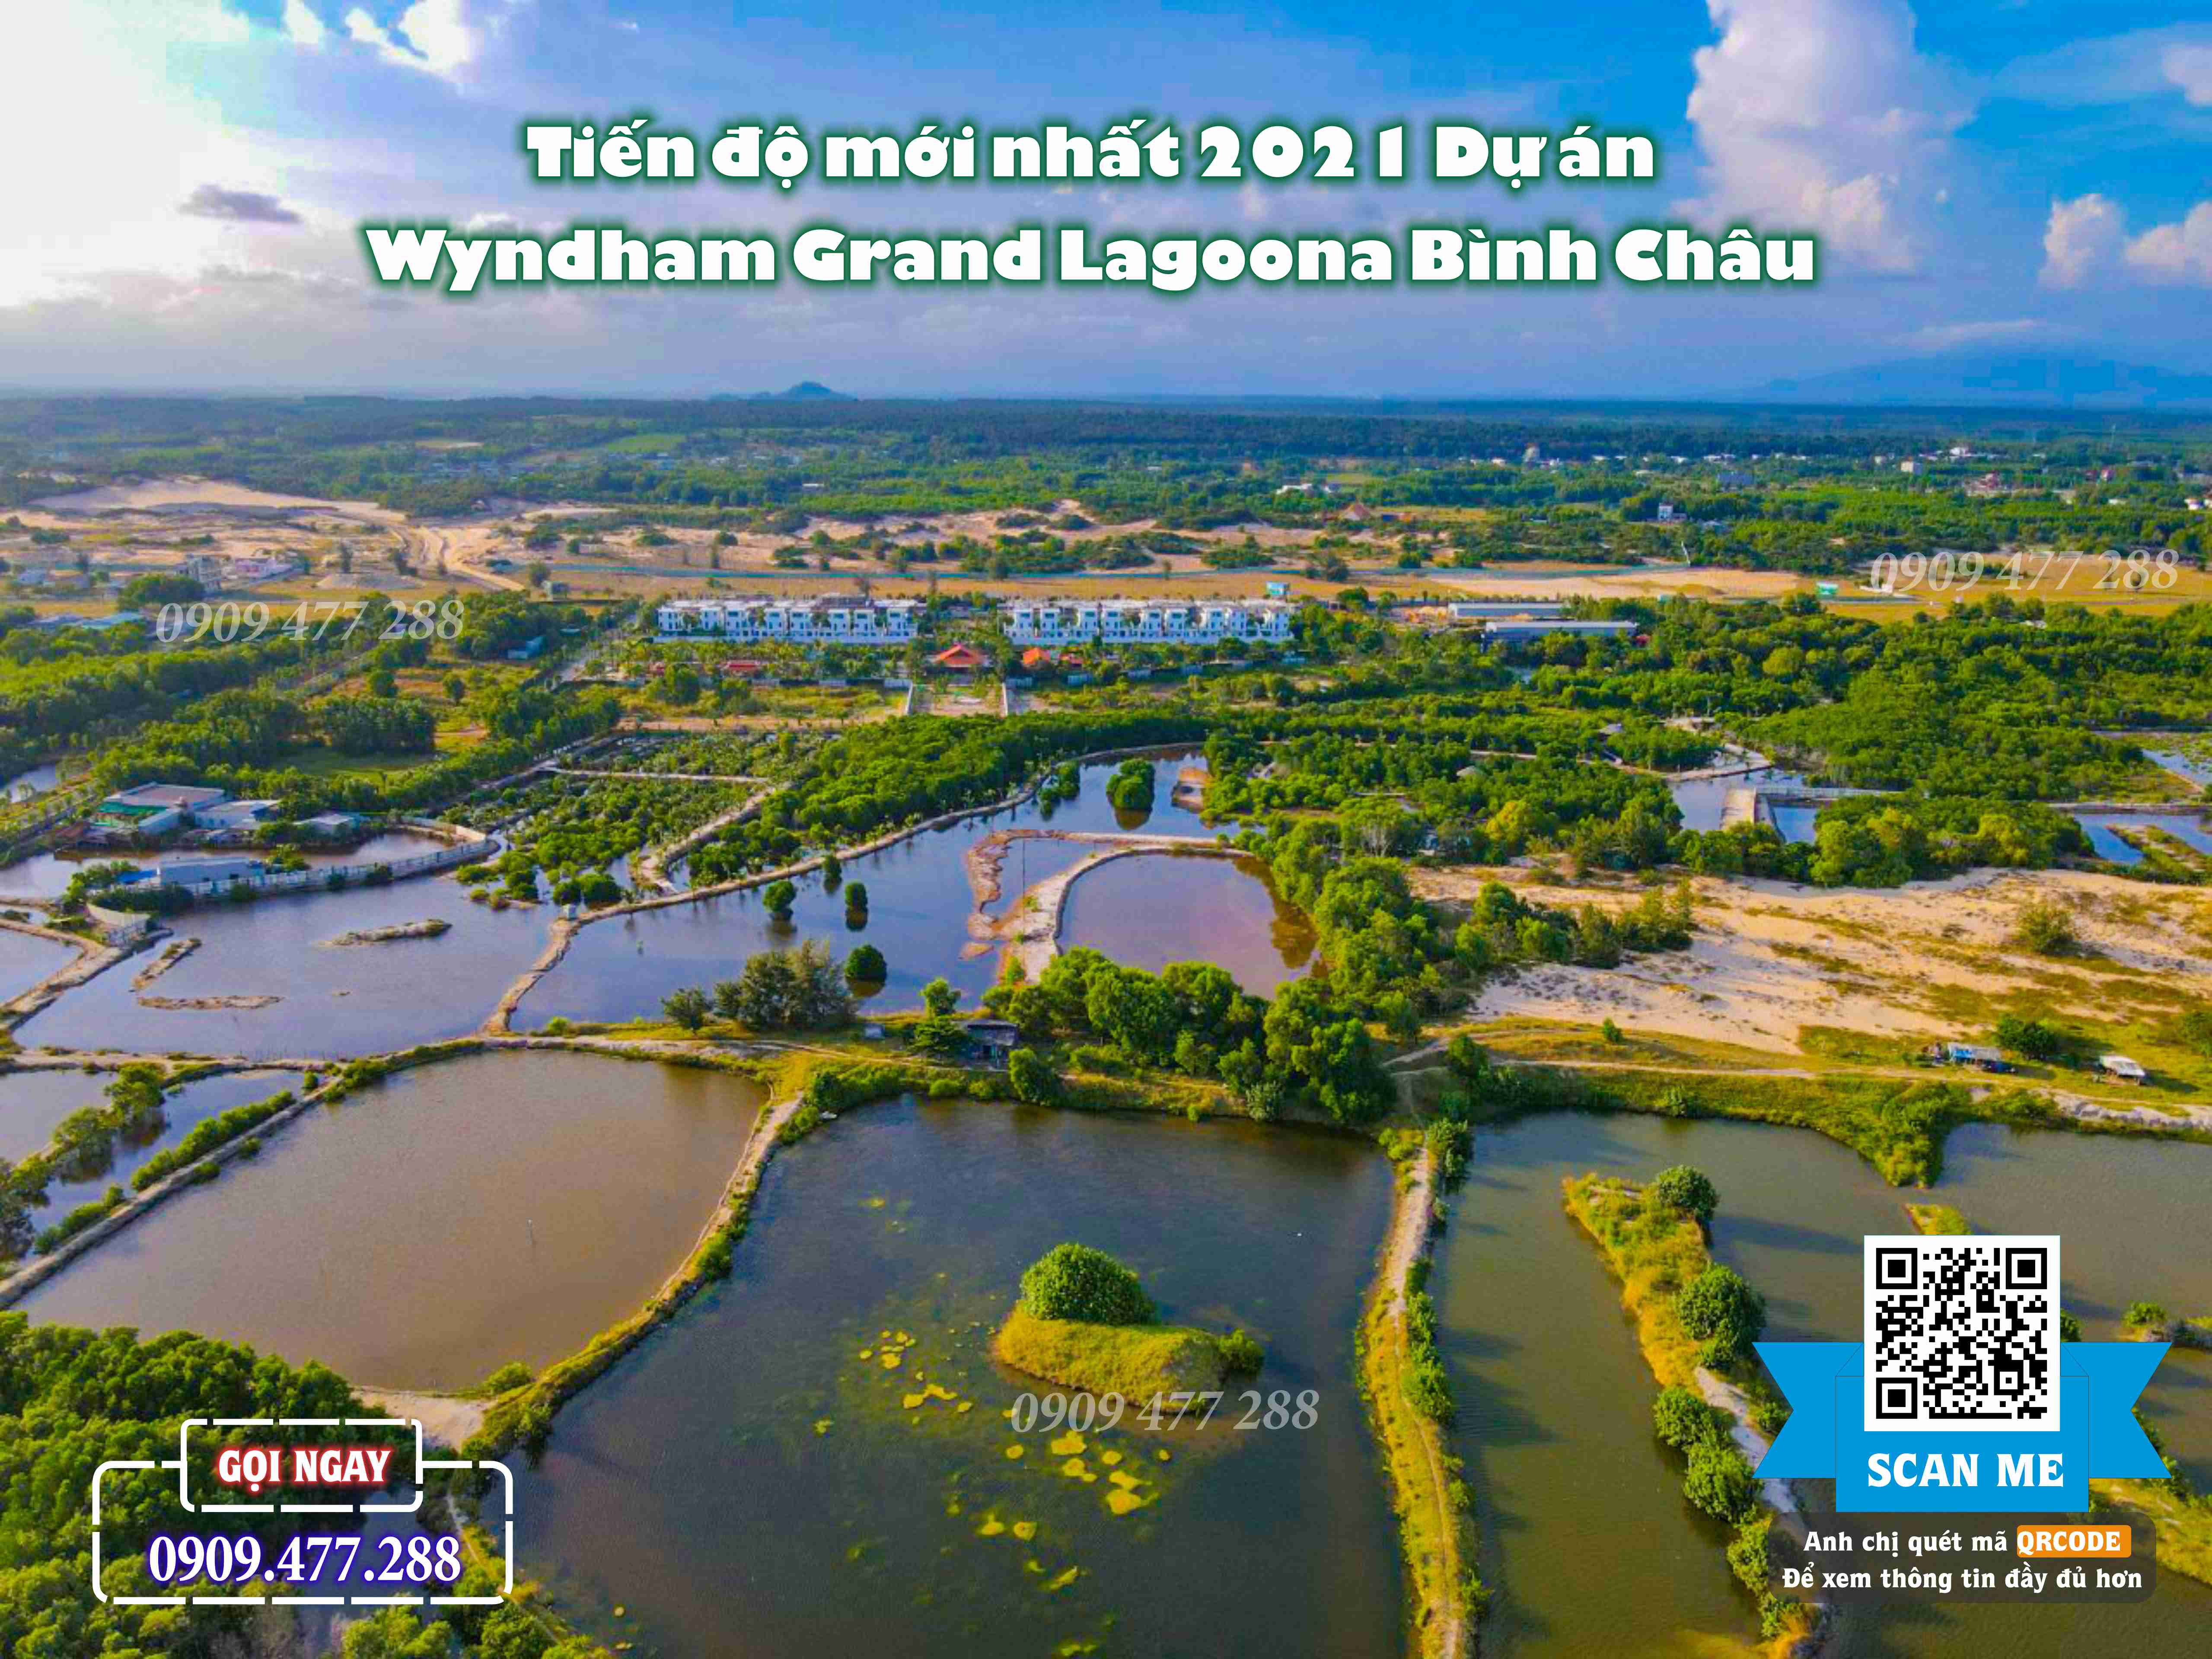 Wyndham Grand Lagoona Bình Châu (19)